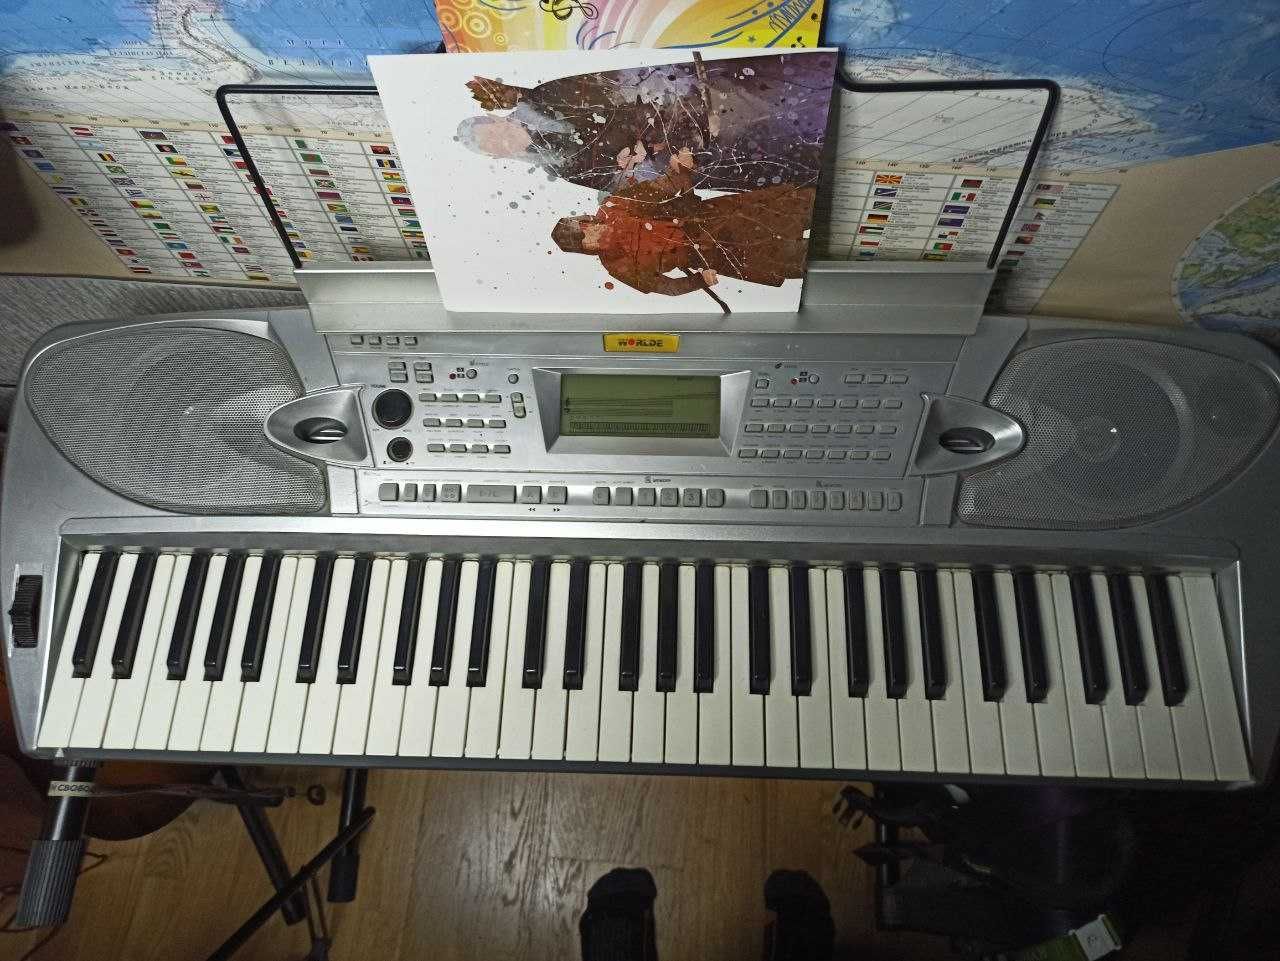 Продаю клавішний Синтезатор Worlde w220